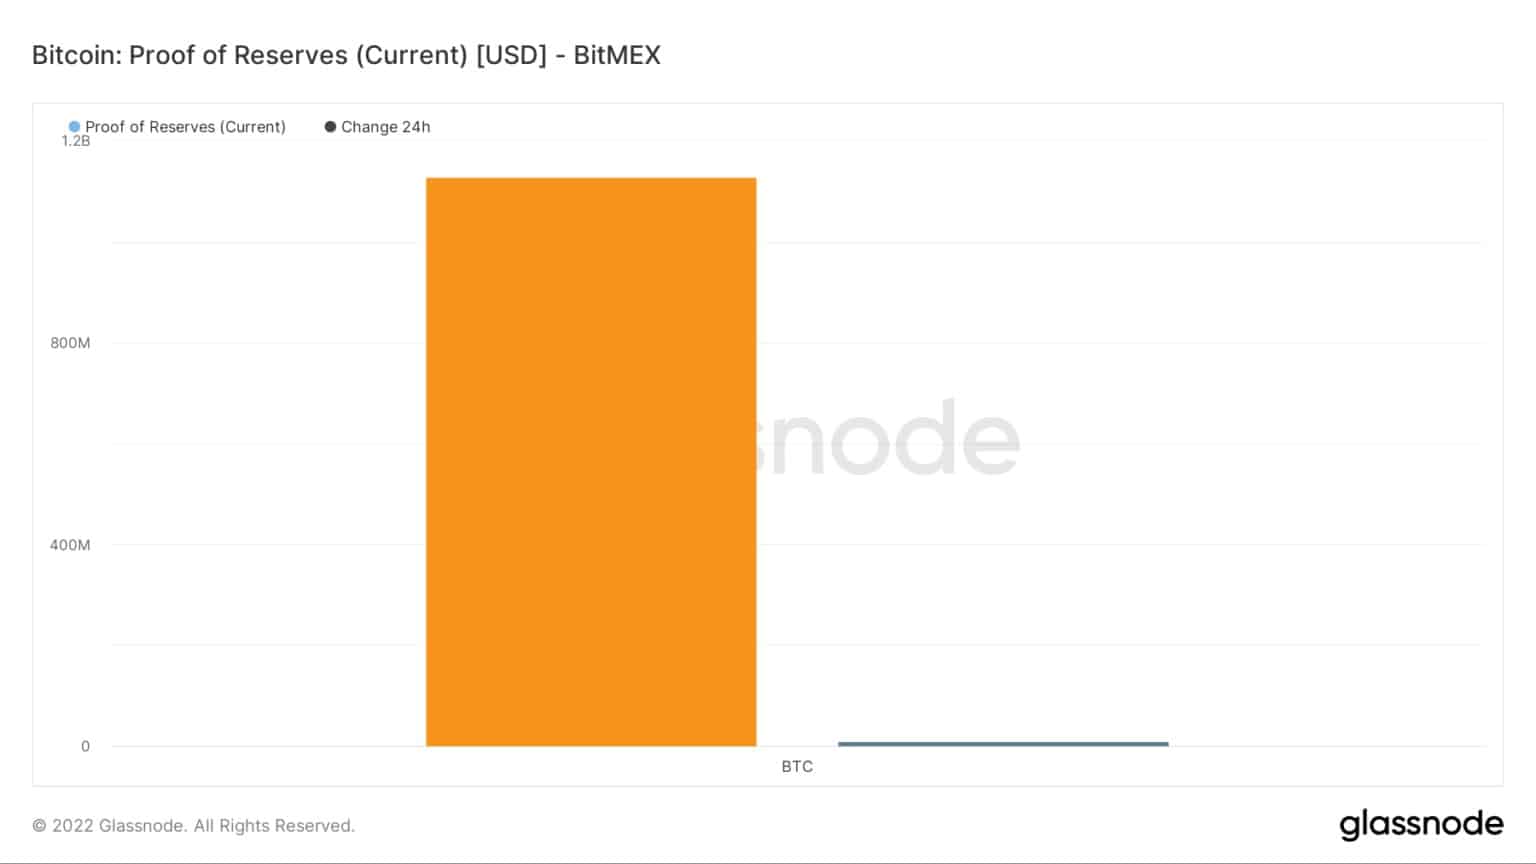 Preuve des réserves - BitMEX / Source : Glassnode